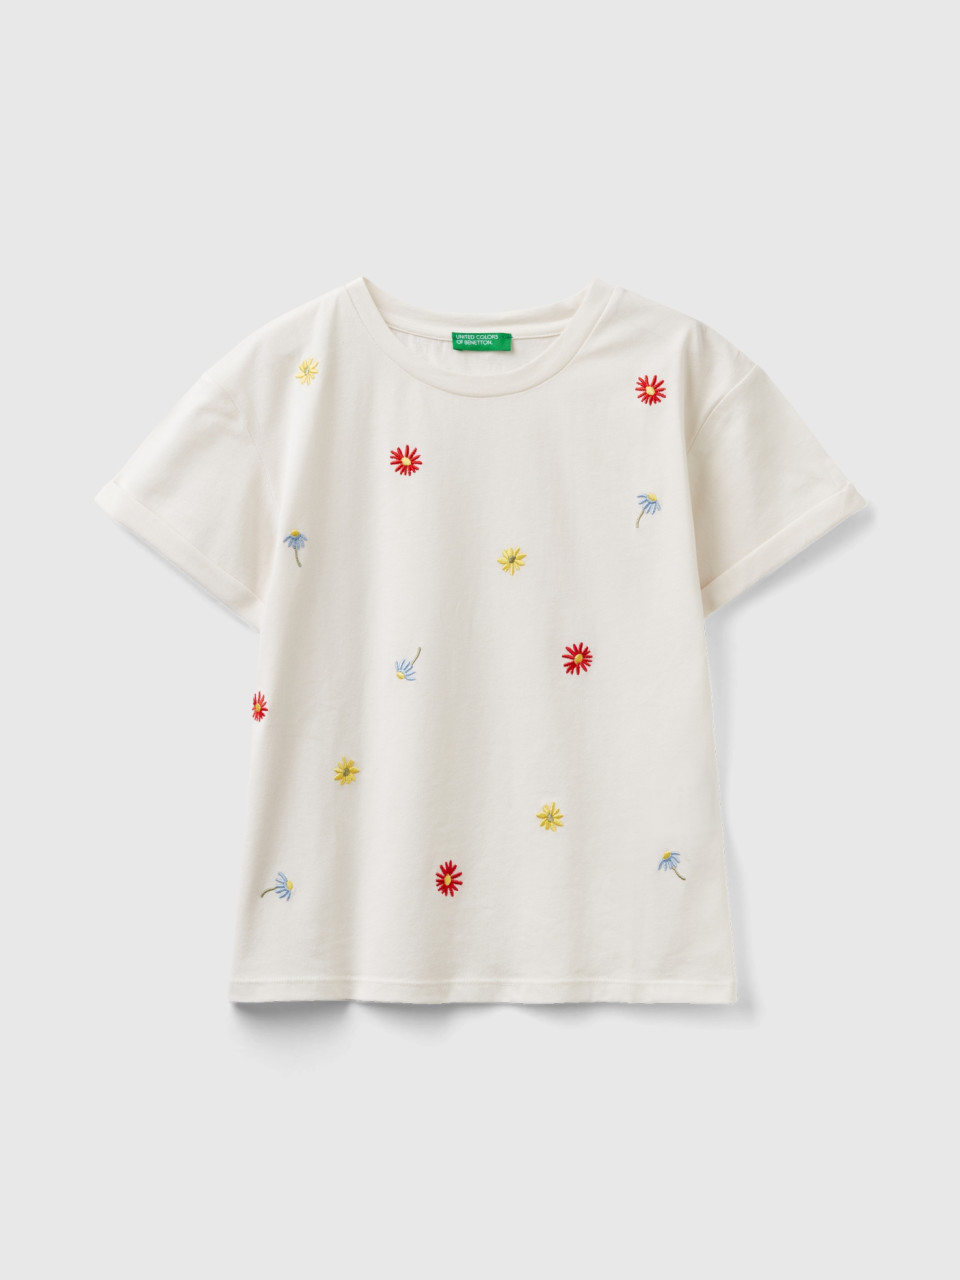 Benetton, Camiseta Con Flores Bordadas, Blanco Crema, Niños